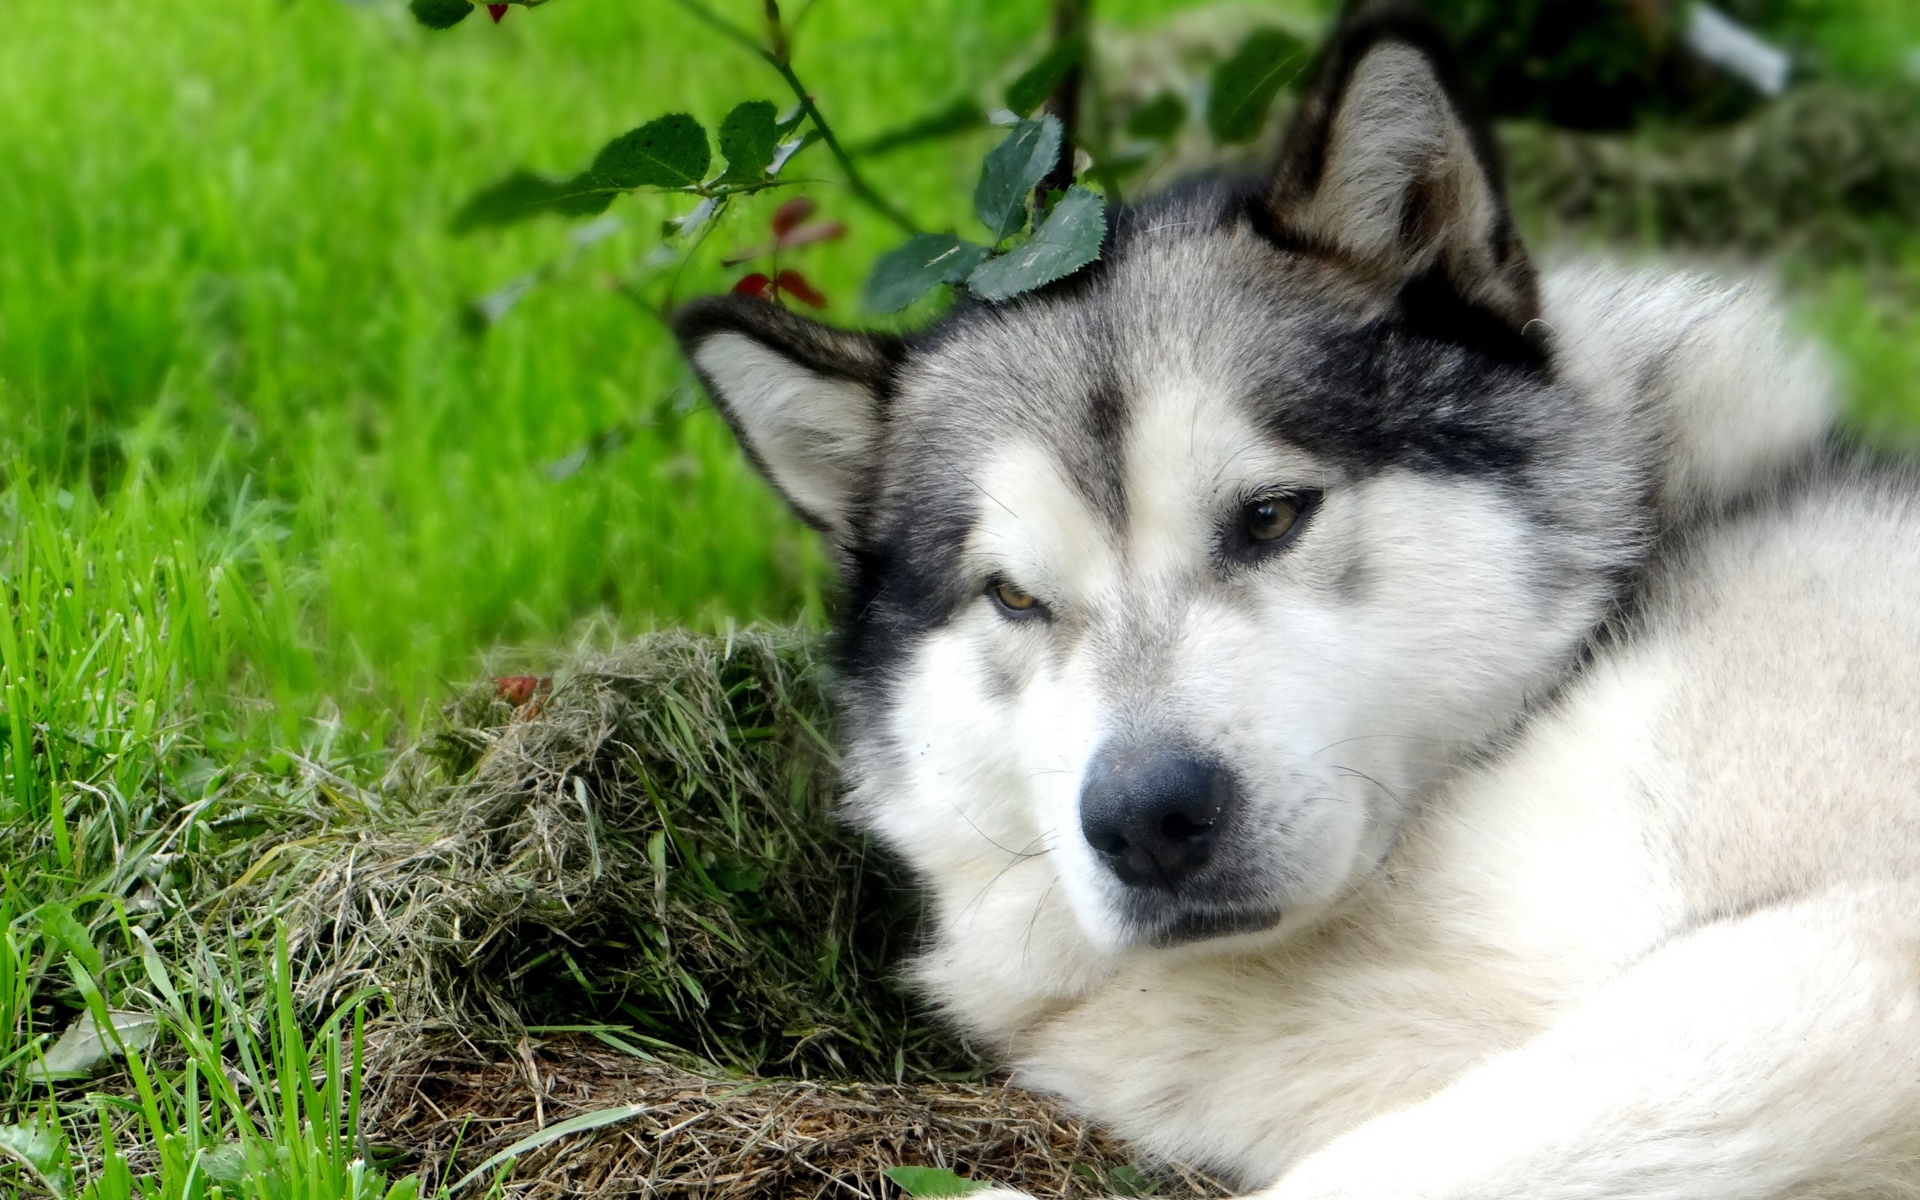 Hình nền chó Alaska: Tận hưởng một phong cảnh tuyệt đẹp với hình nền chó Alaska. Vùng đất hoang sơ và đầy ắp tuyết trắng, hình ảnh những chú chó Alaska vạm vỡ, khỏe mạnh sẽ khiến bất cứ ai cũng mê mẩn và chú ý đến bức hình này.